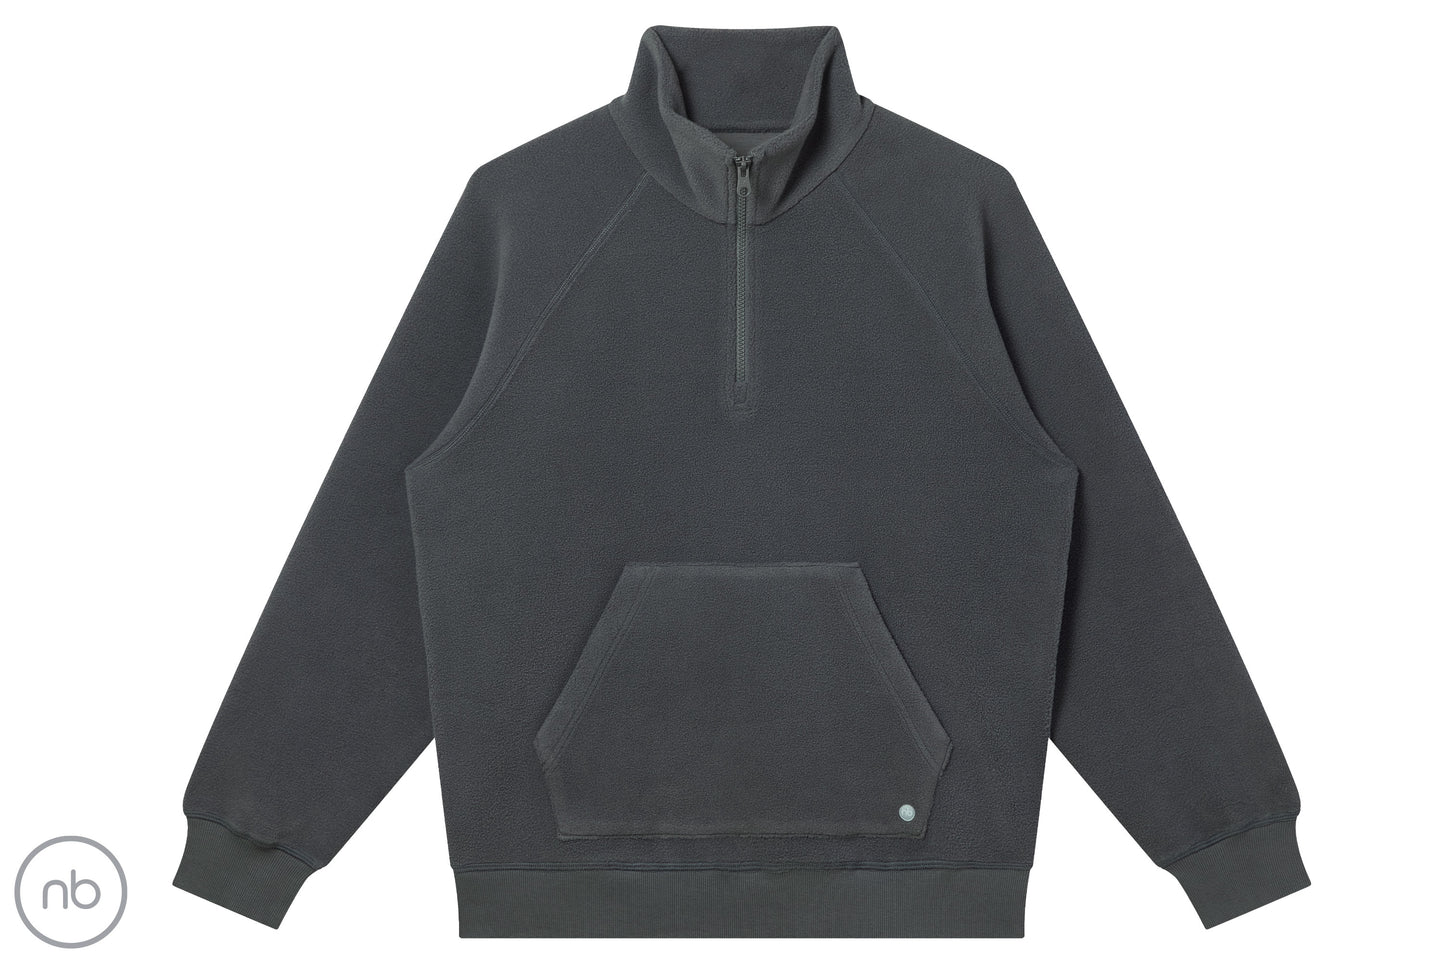 Basics Unisex Half Zip Fleece Top - Dark Charcoal